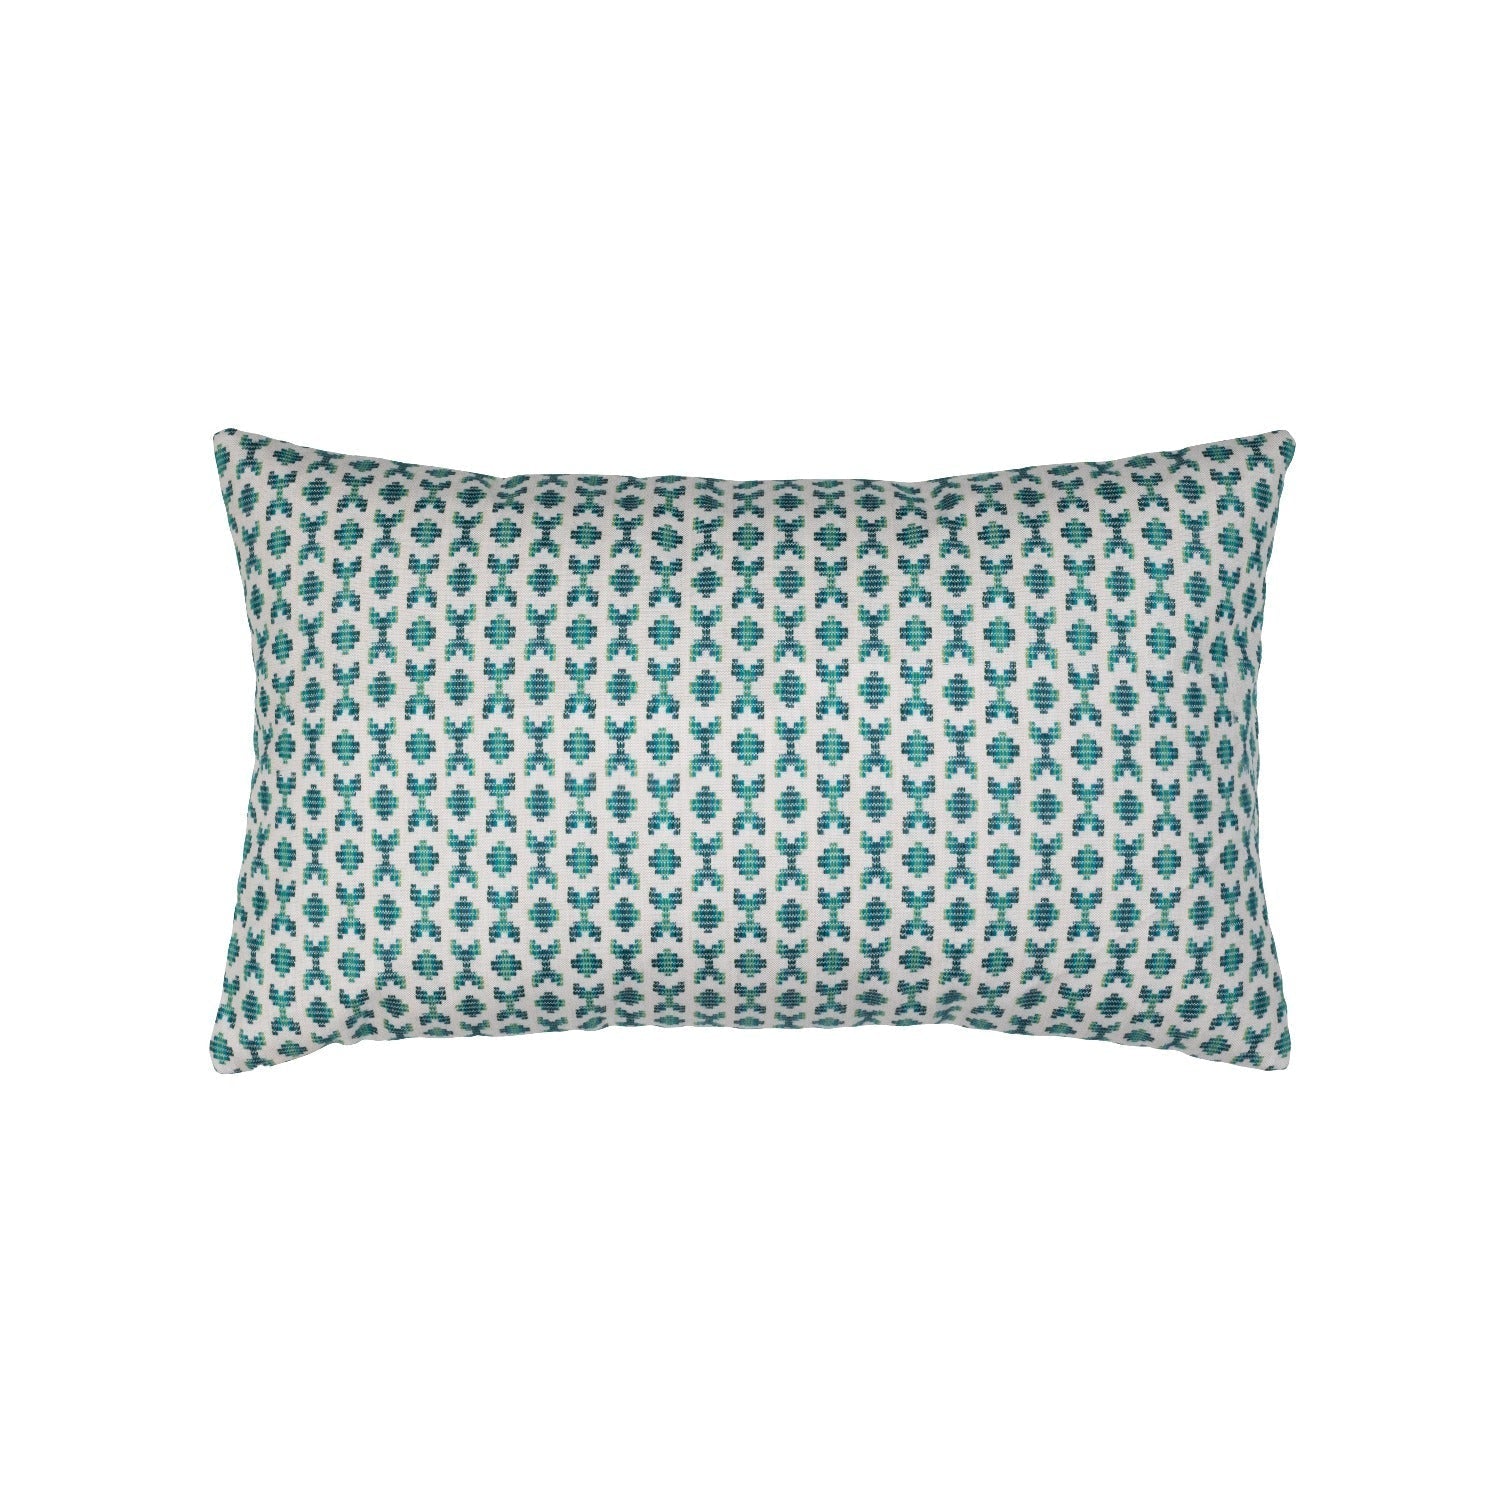 Elaine Smith Alcazar Sea Green Lumbar Pillow Throw Pillows 12041448